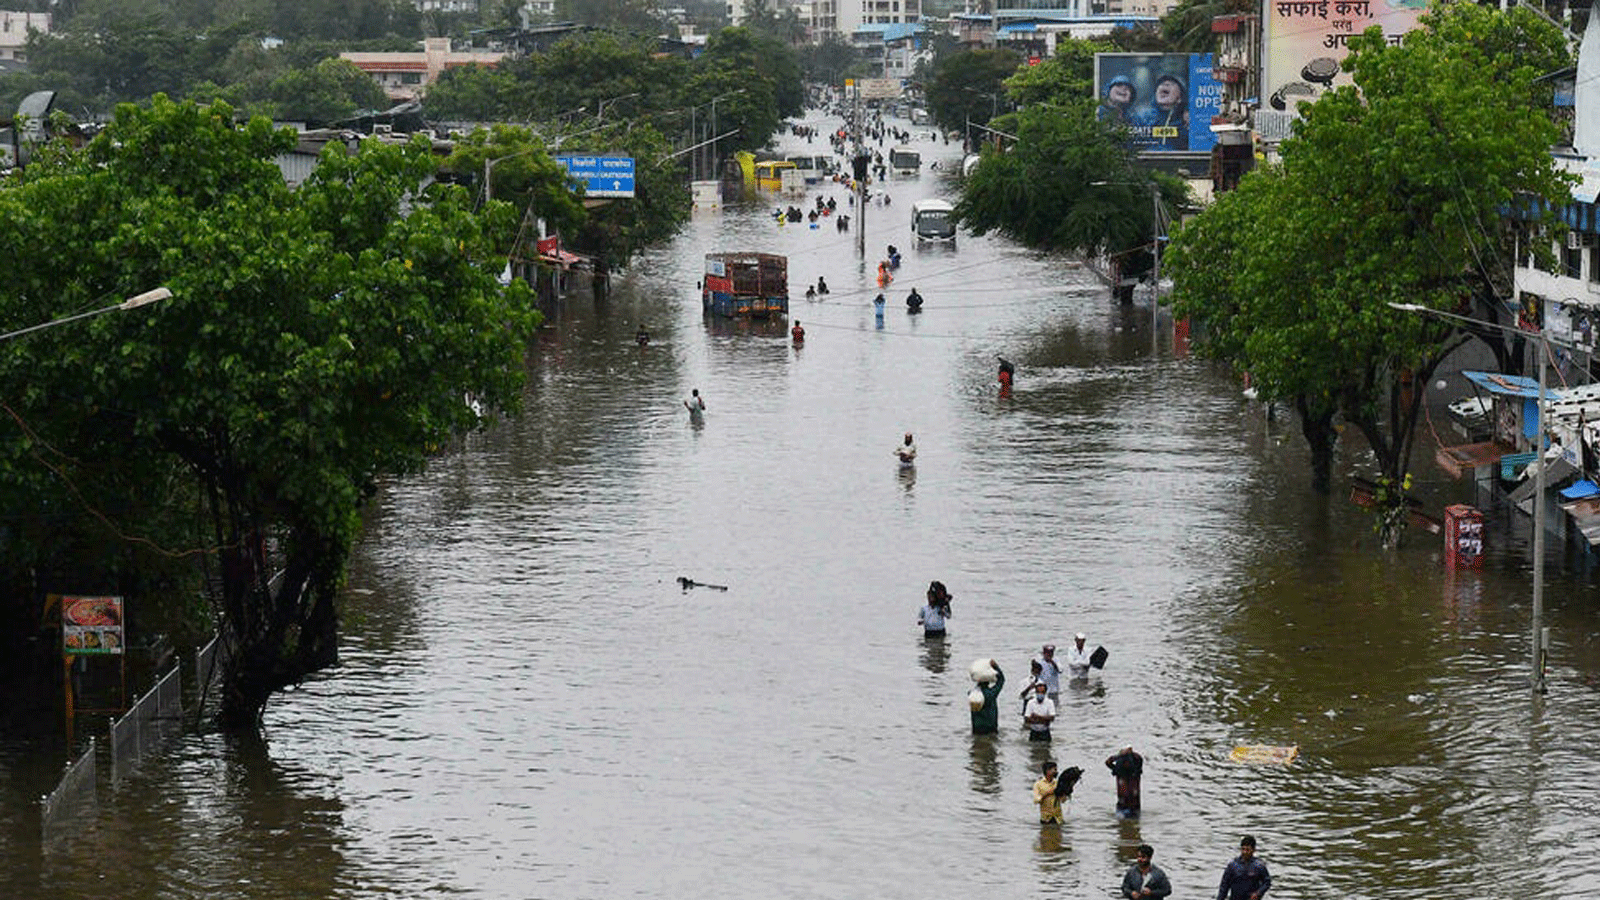 الفيضانات الشائعة خلال موسم الرياح الموسمية في الهند أصبحت أكثر قوة، وفقًا لتقرير صادر عن معهد بوتسدام لأبحاث تأثير المناخ. بتاريخ 25 تموز/ يوليو 2021